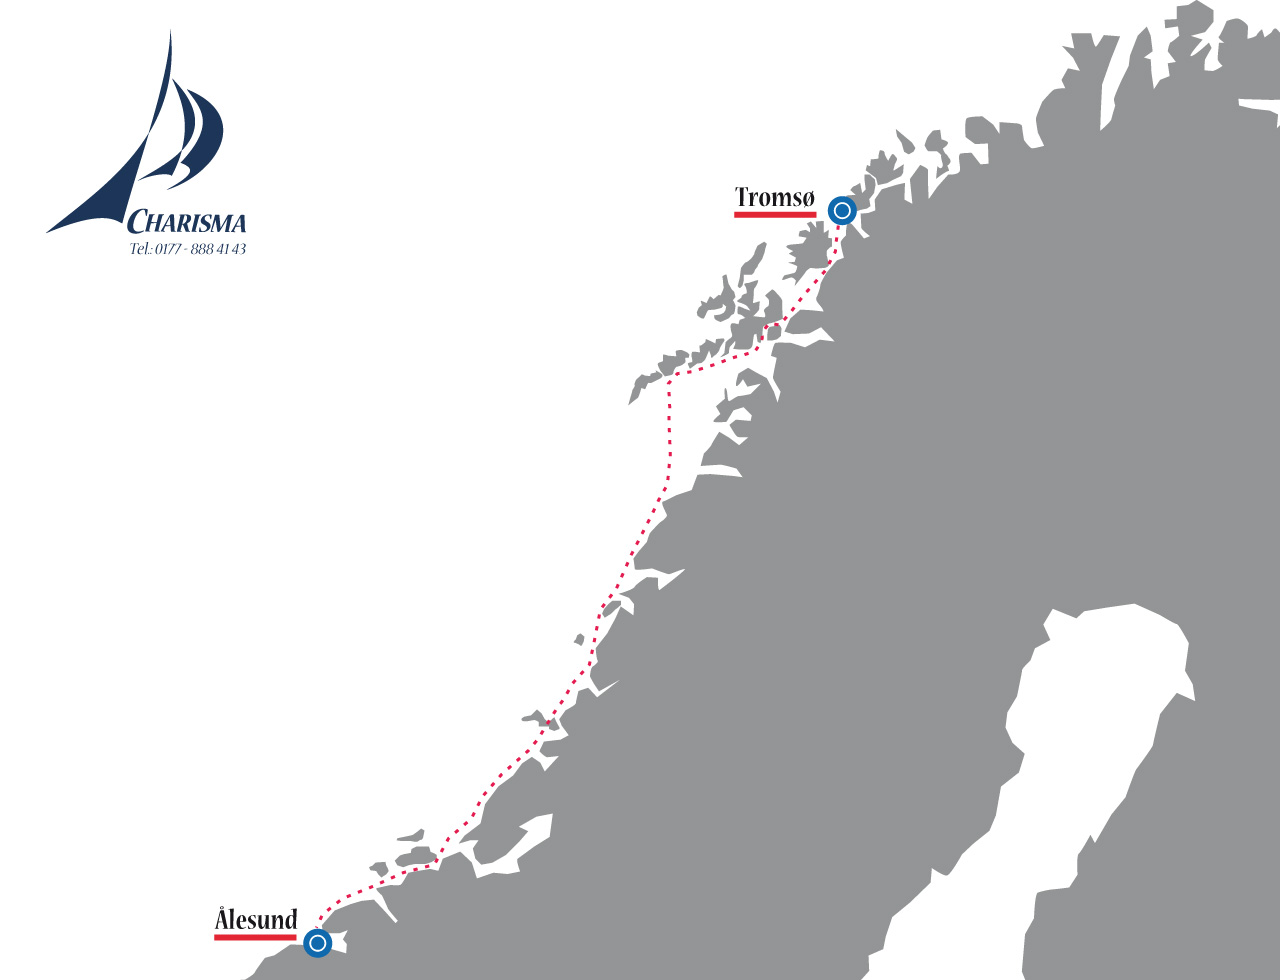 Tromsø - Ålesund